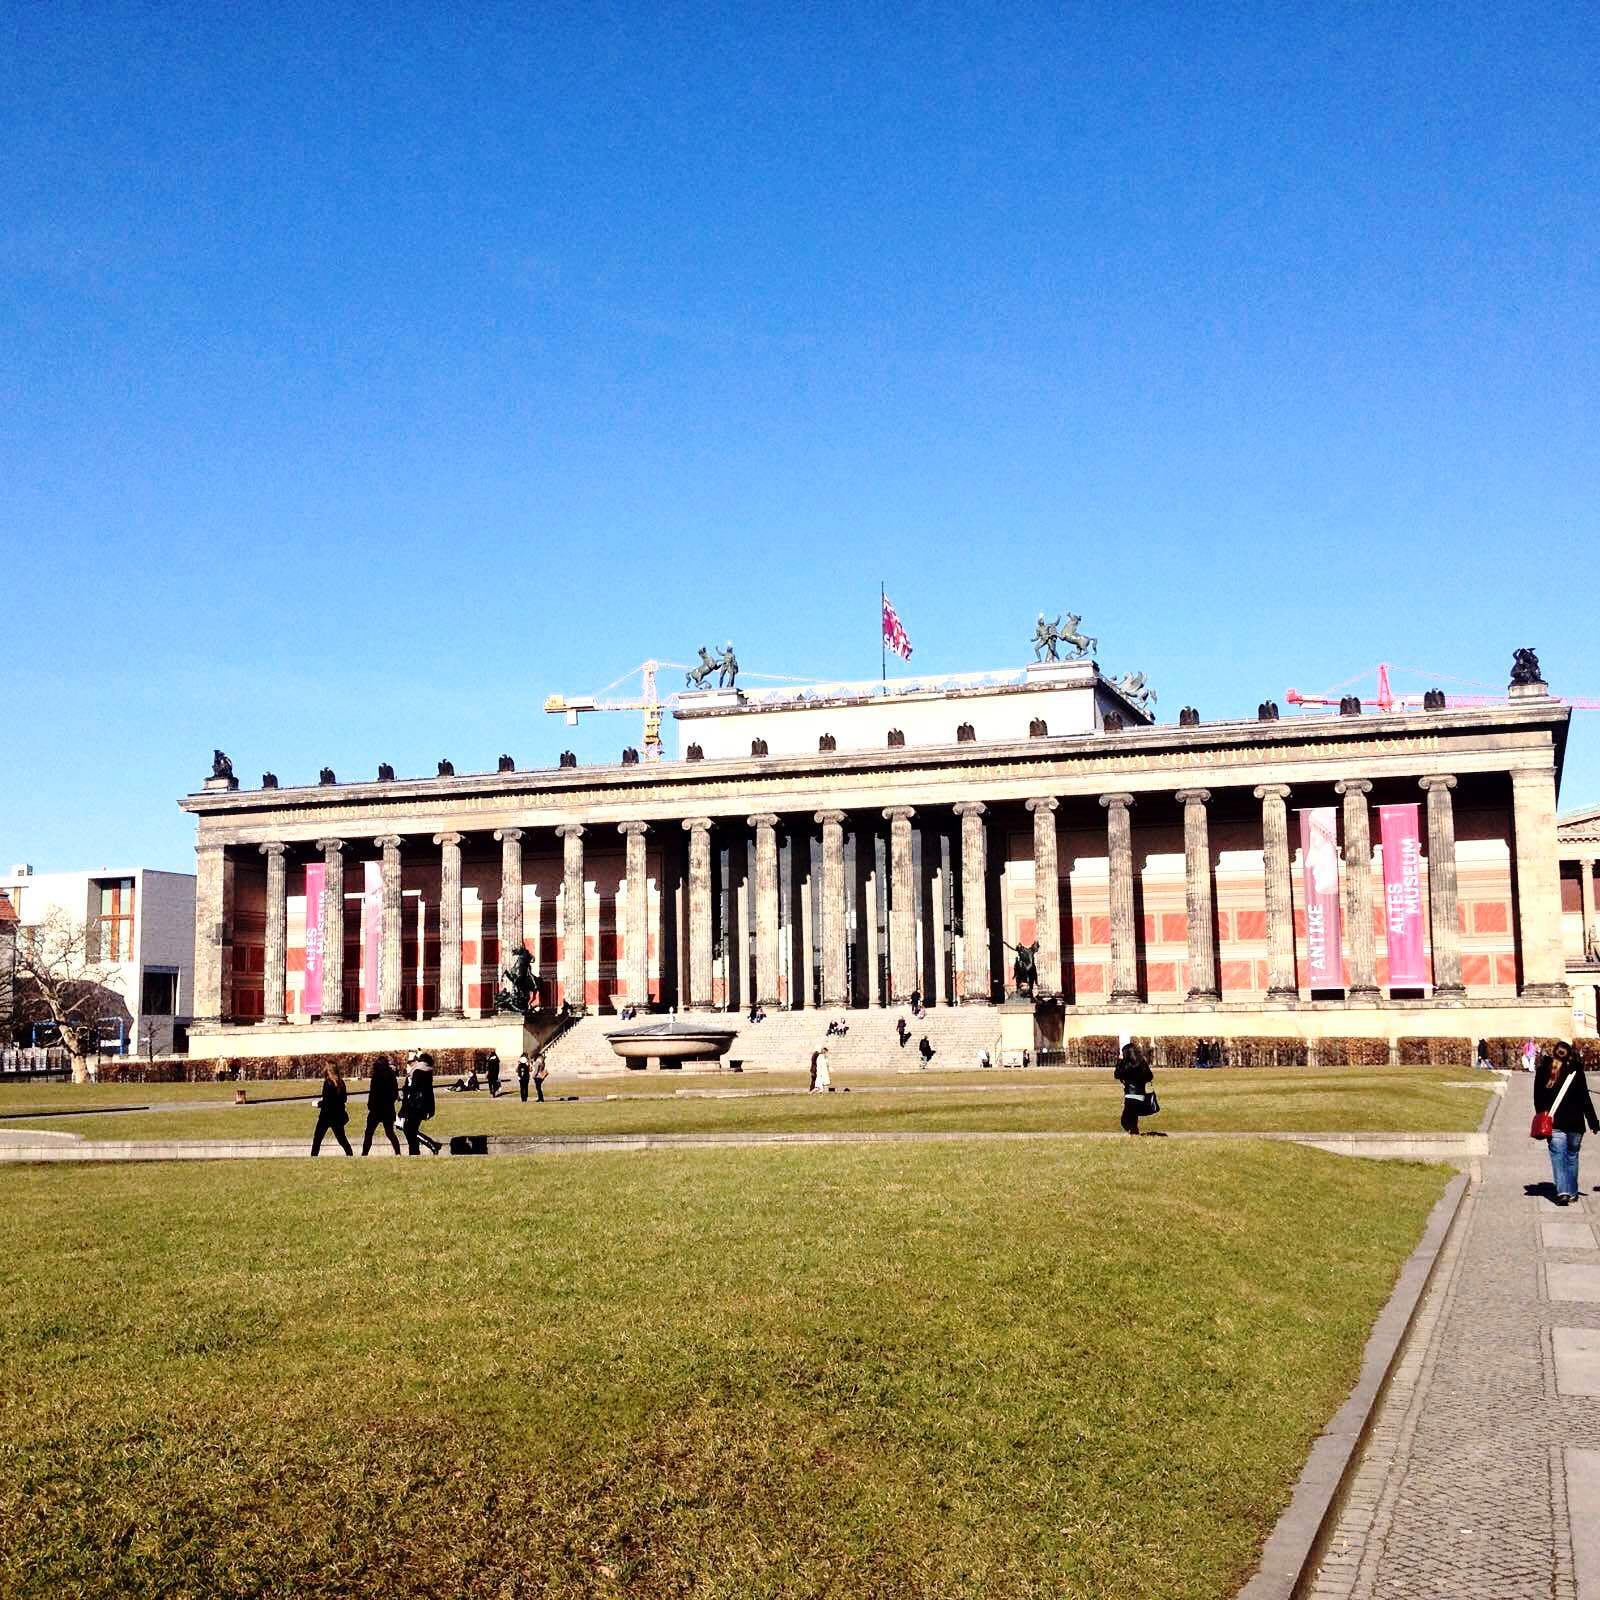 这是老博物馆 柏林旧博物馆